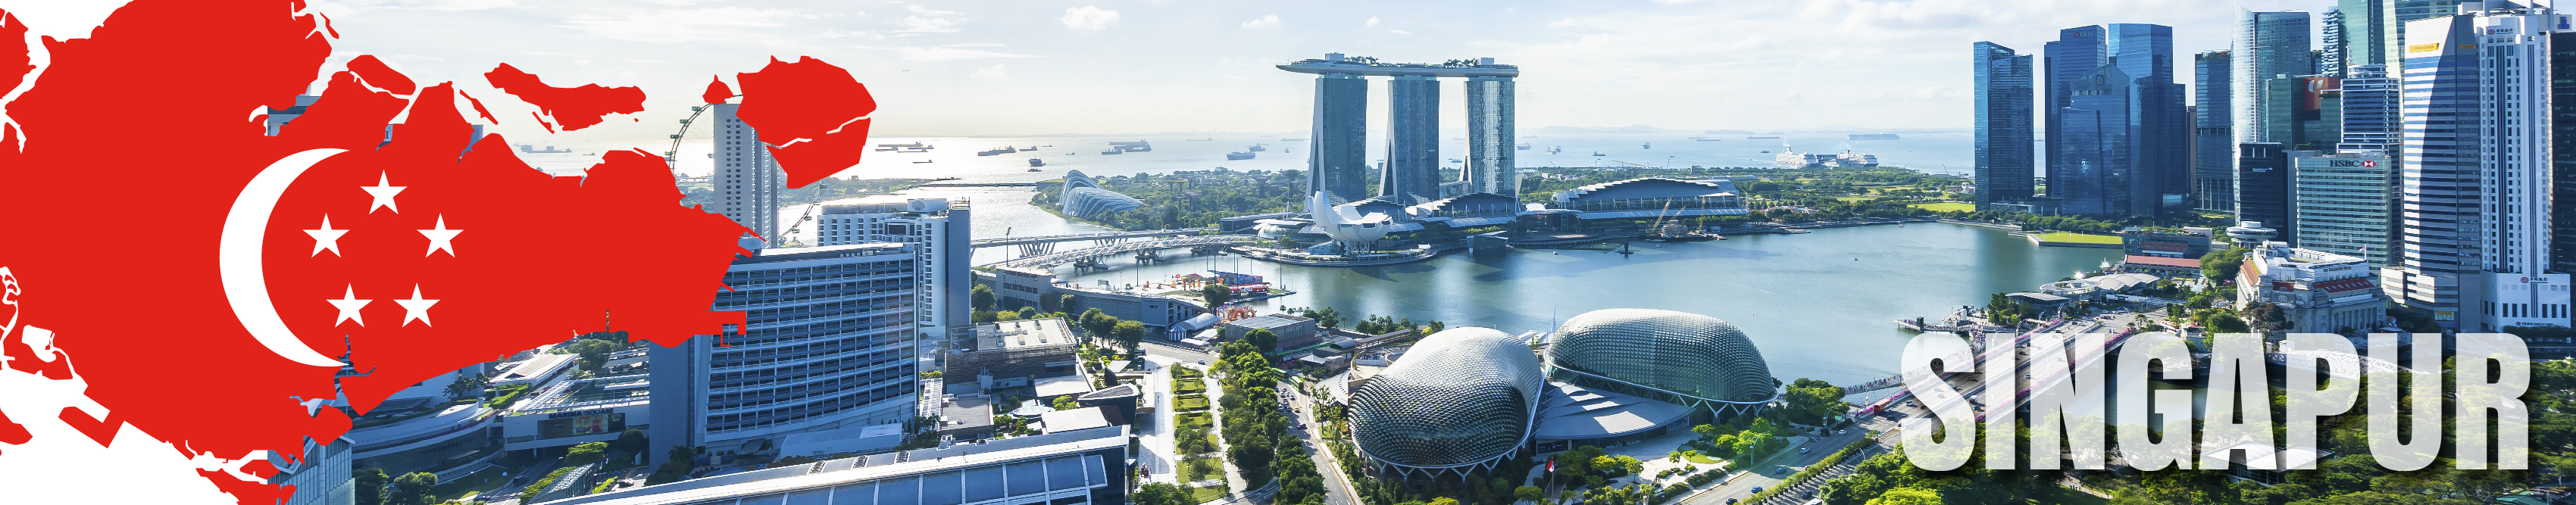 Panorámica de la ciudad y mapa de Singapur